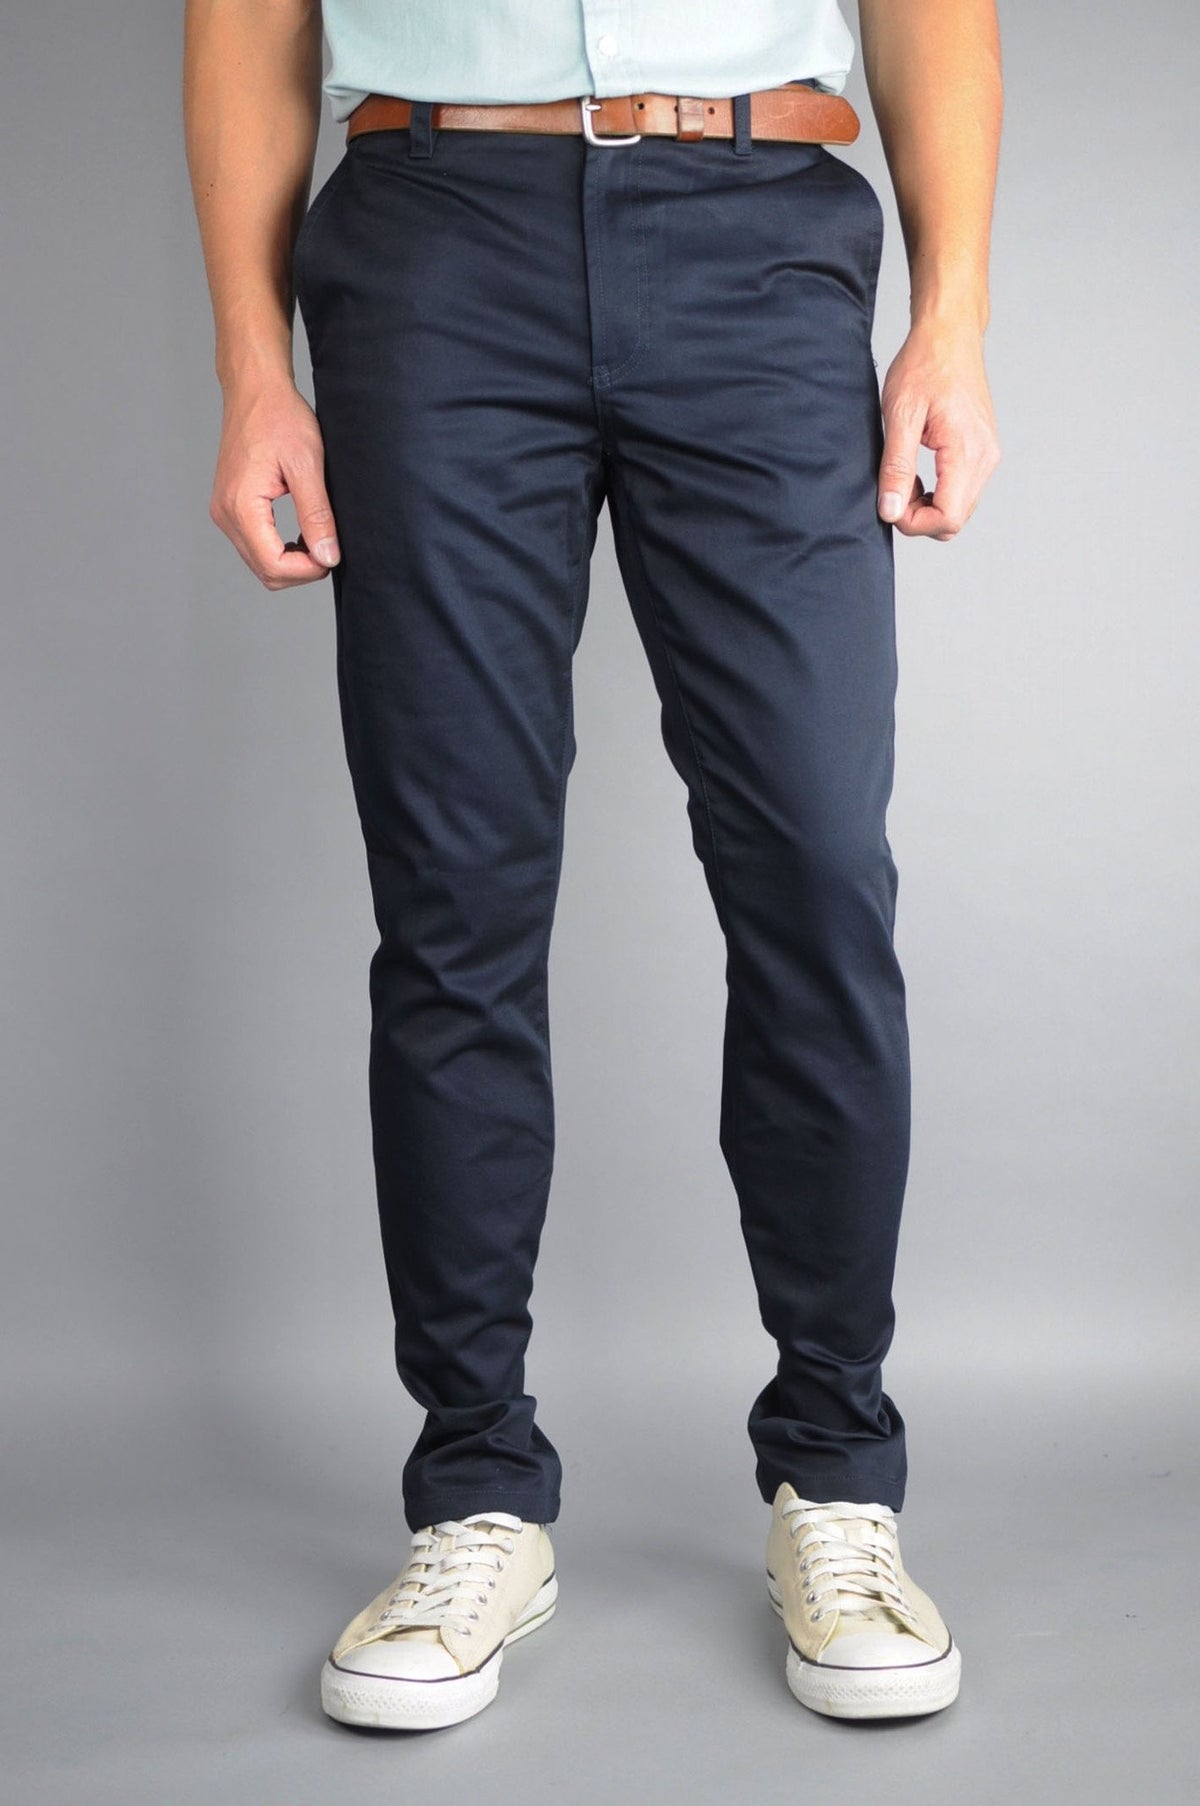 Neo Blue Chino Pants - Xtreme Wear